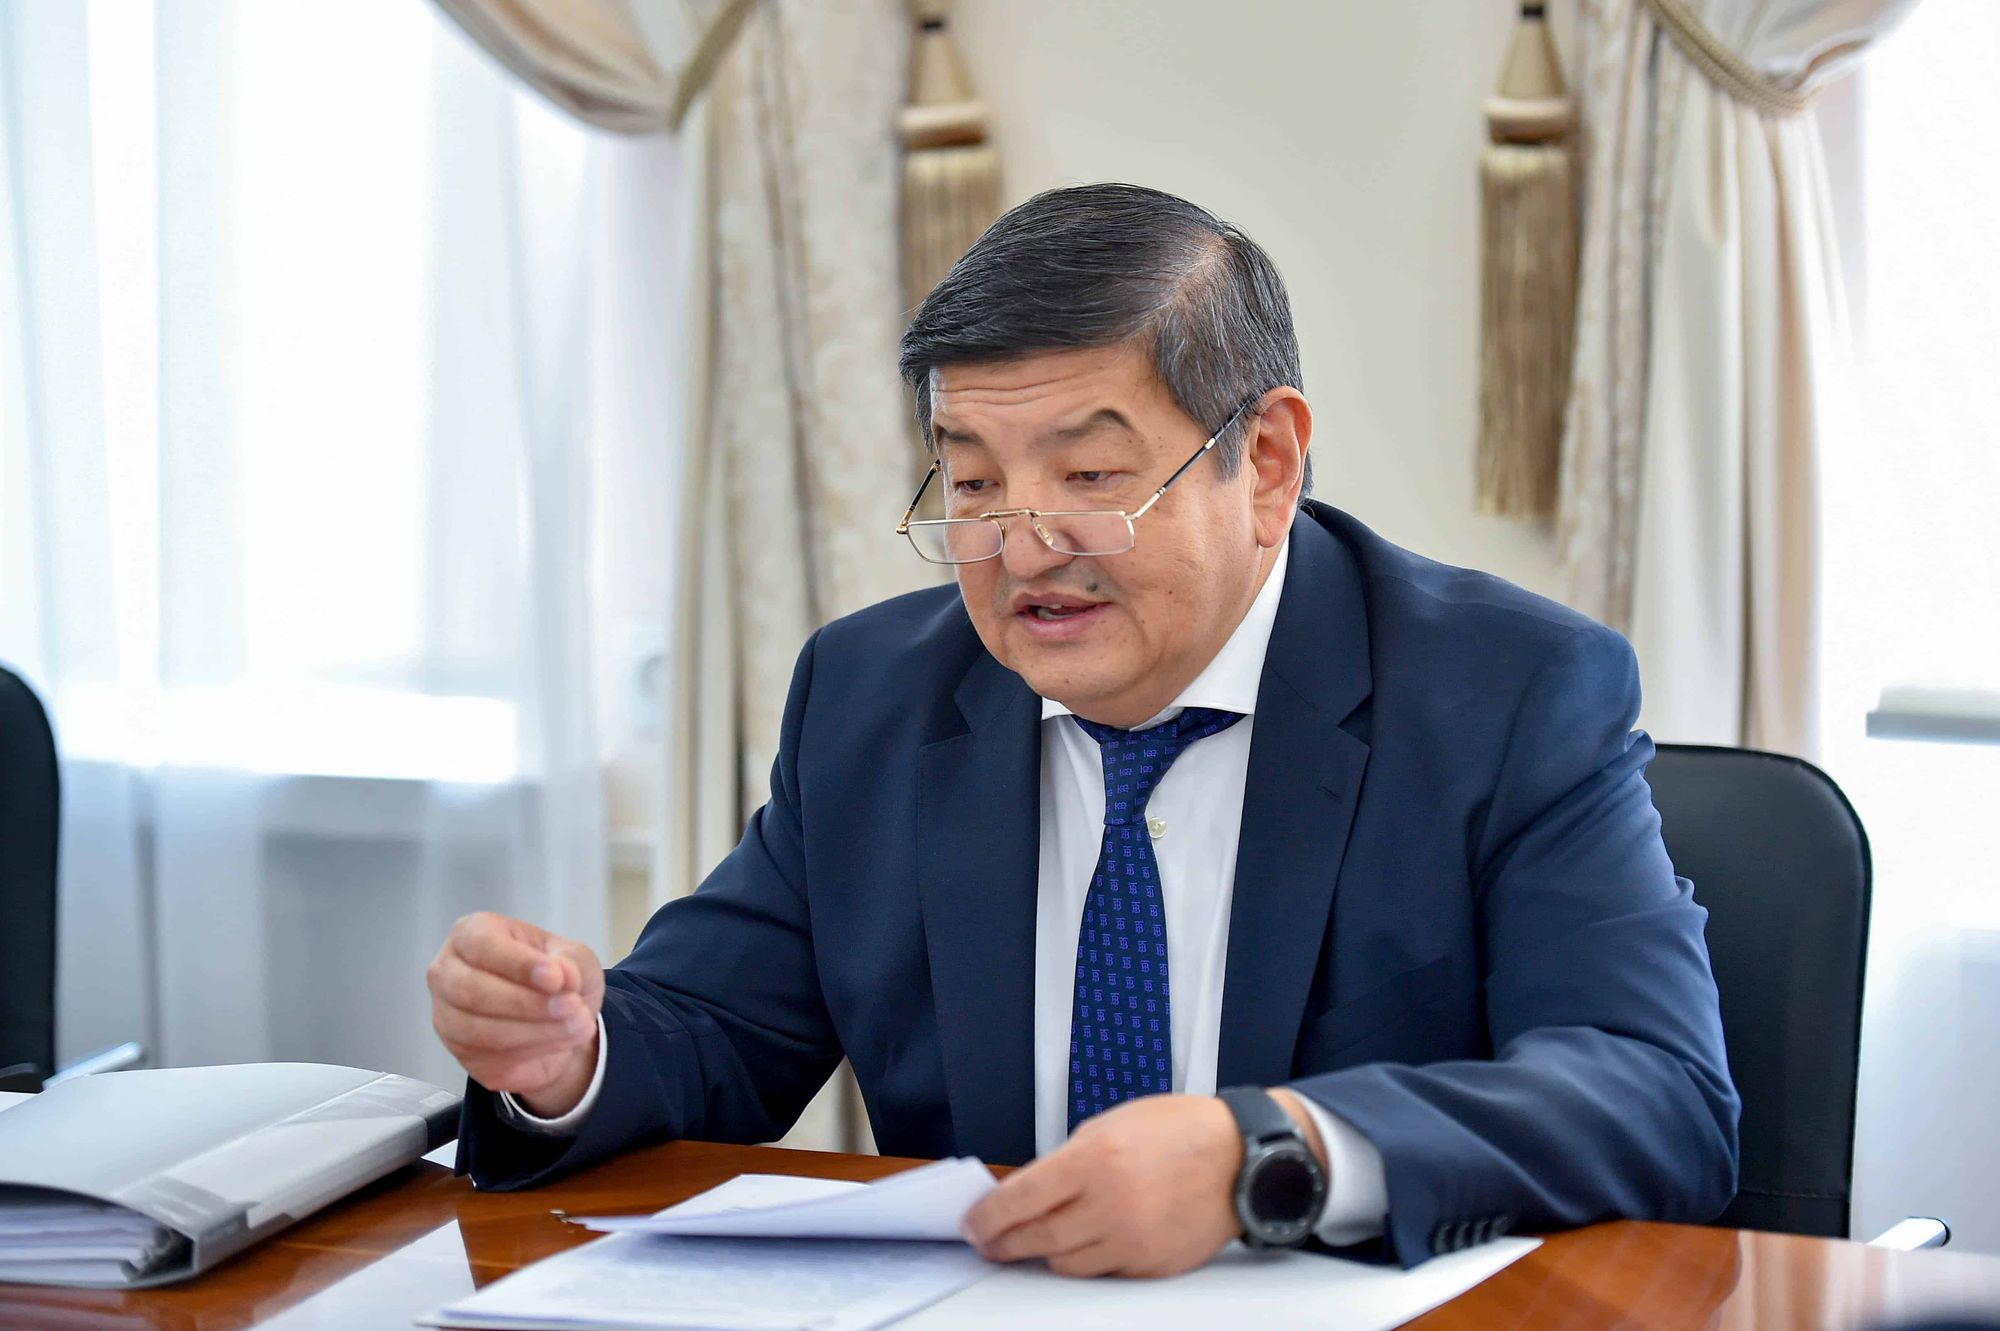 Властям нужно два-три года для обустройства комфортной жизни в Кыргызстане – Акылбек Жапаров